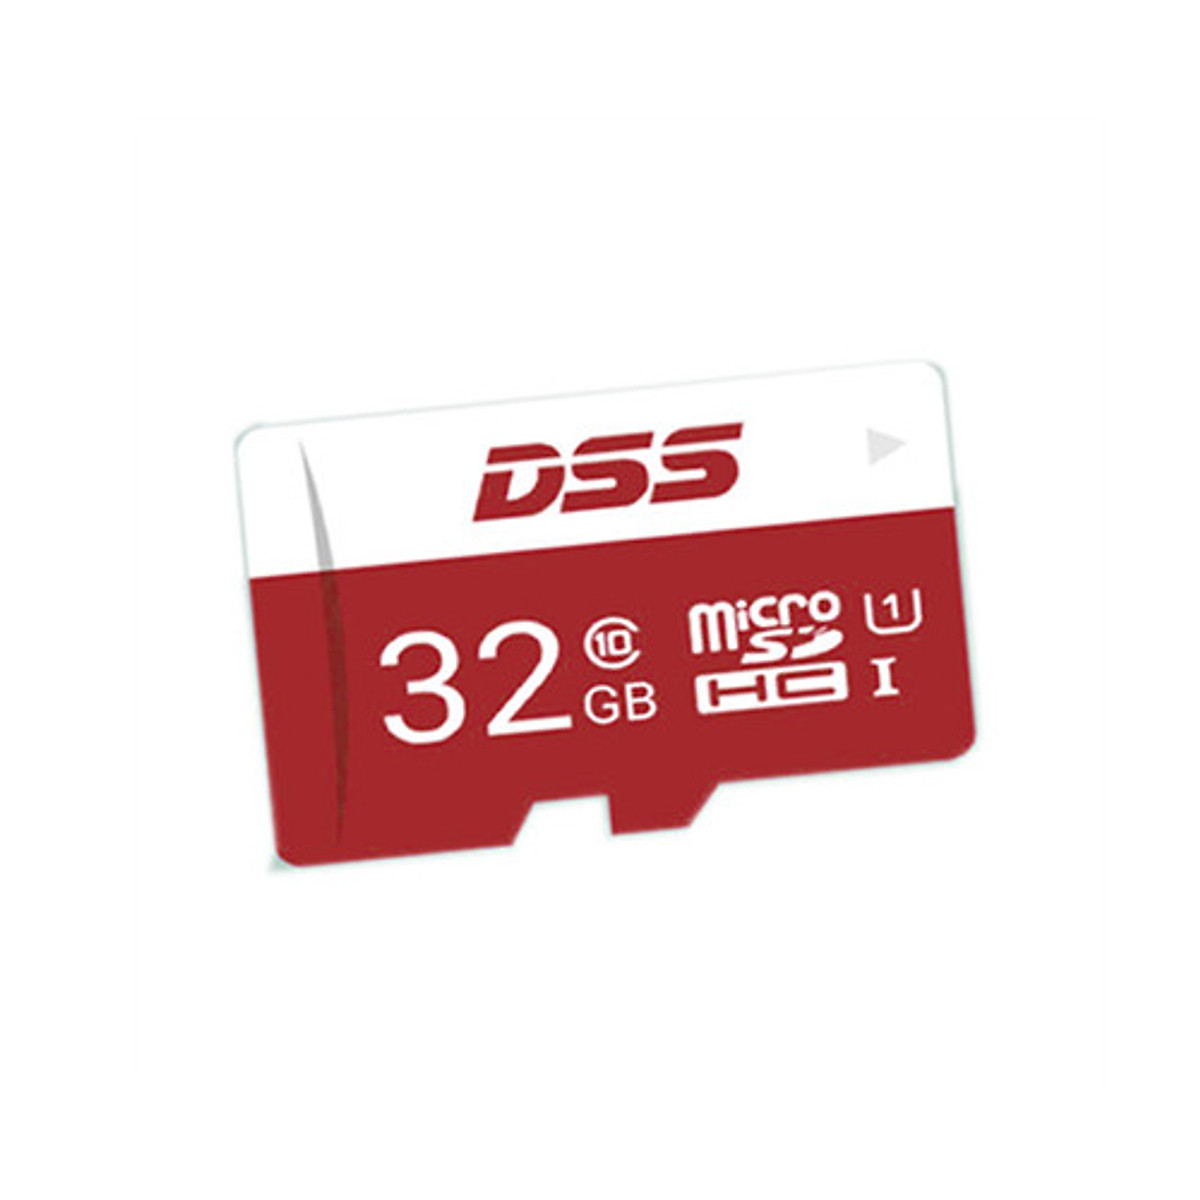 Thẻ Nhớ MicroSD DSS 32Gb Class 10 (Thẻ Chuyên Dụng Cho Camera, Điện Thoại) - Hàng Chính Hãng